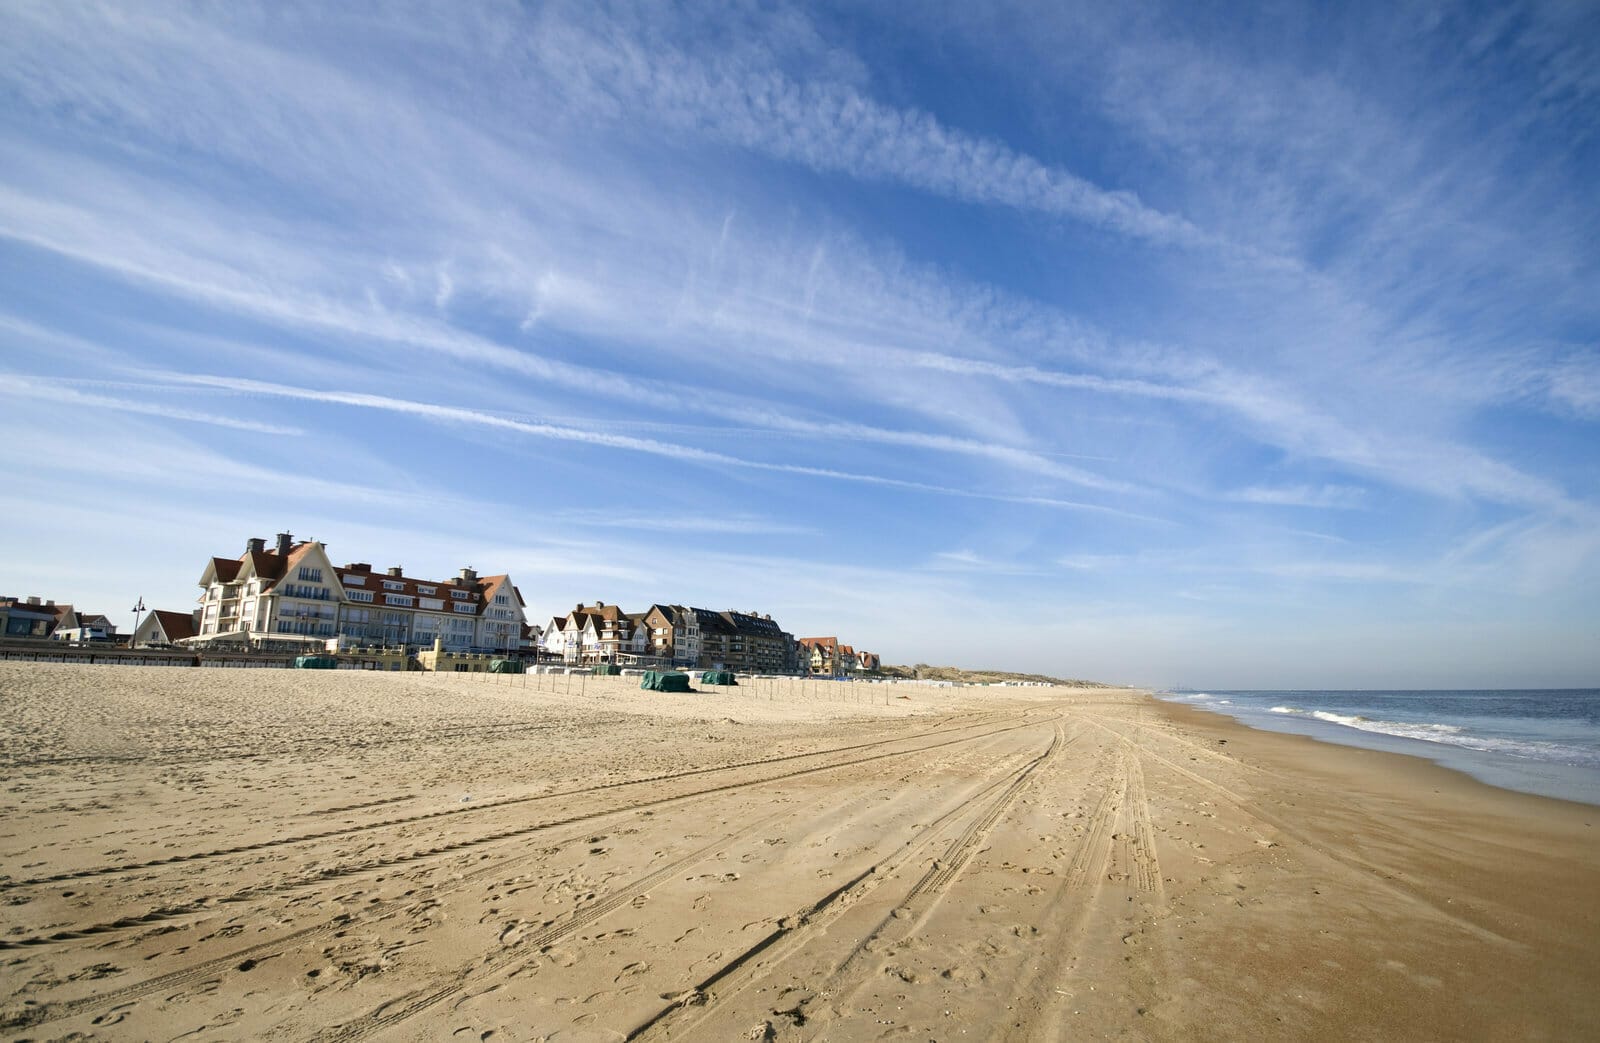 Lire la suite à propos de l’article Allier découverte et plaisir sur la côte belge d’Ostende